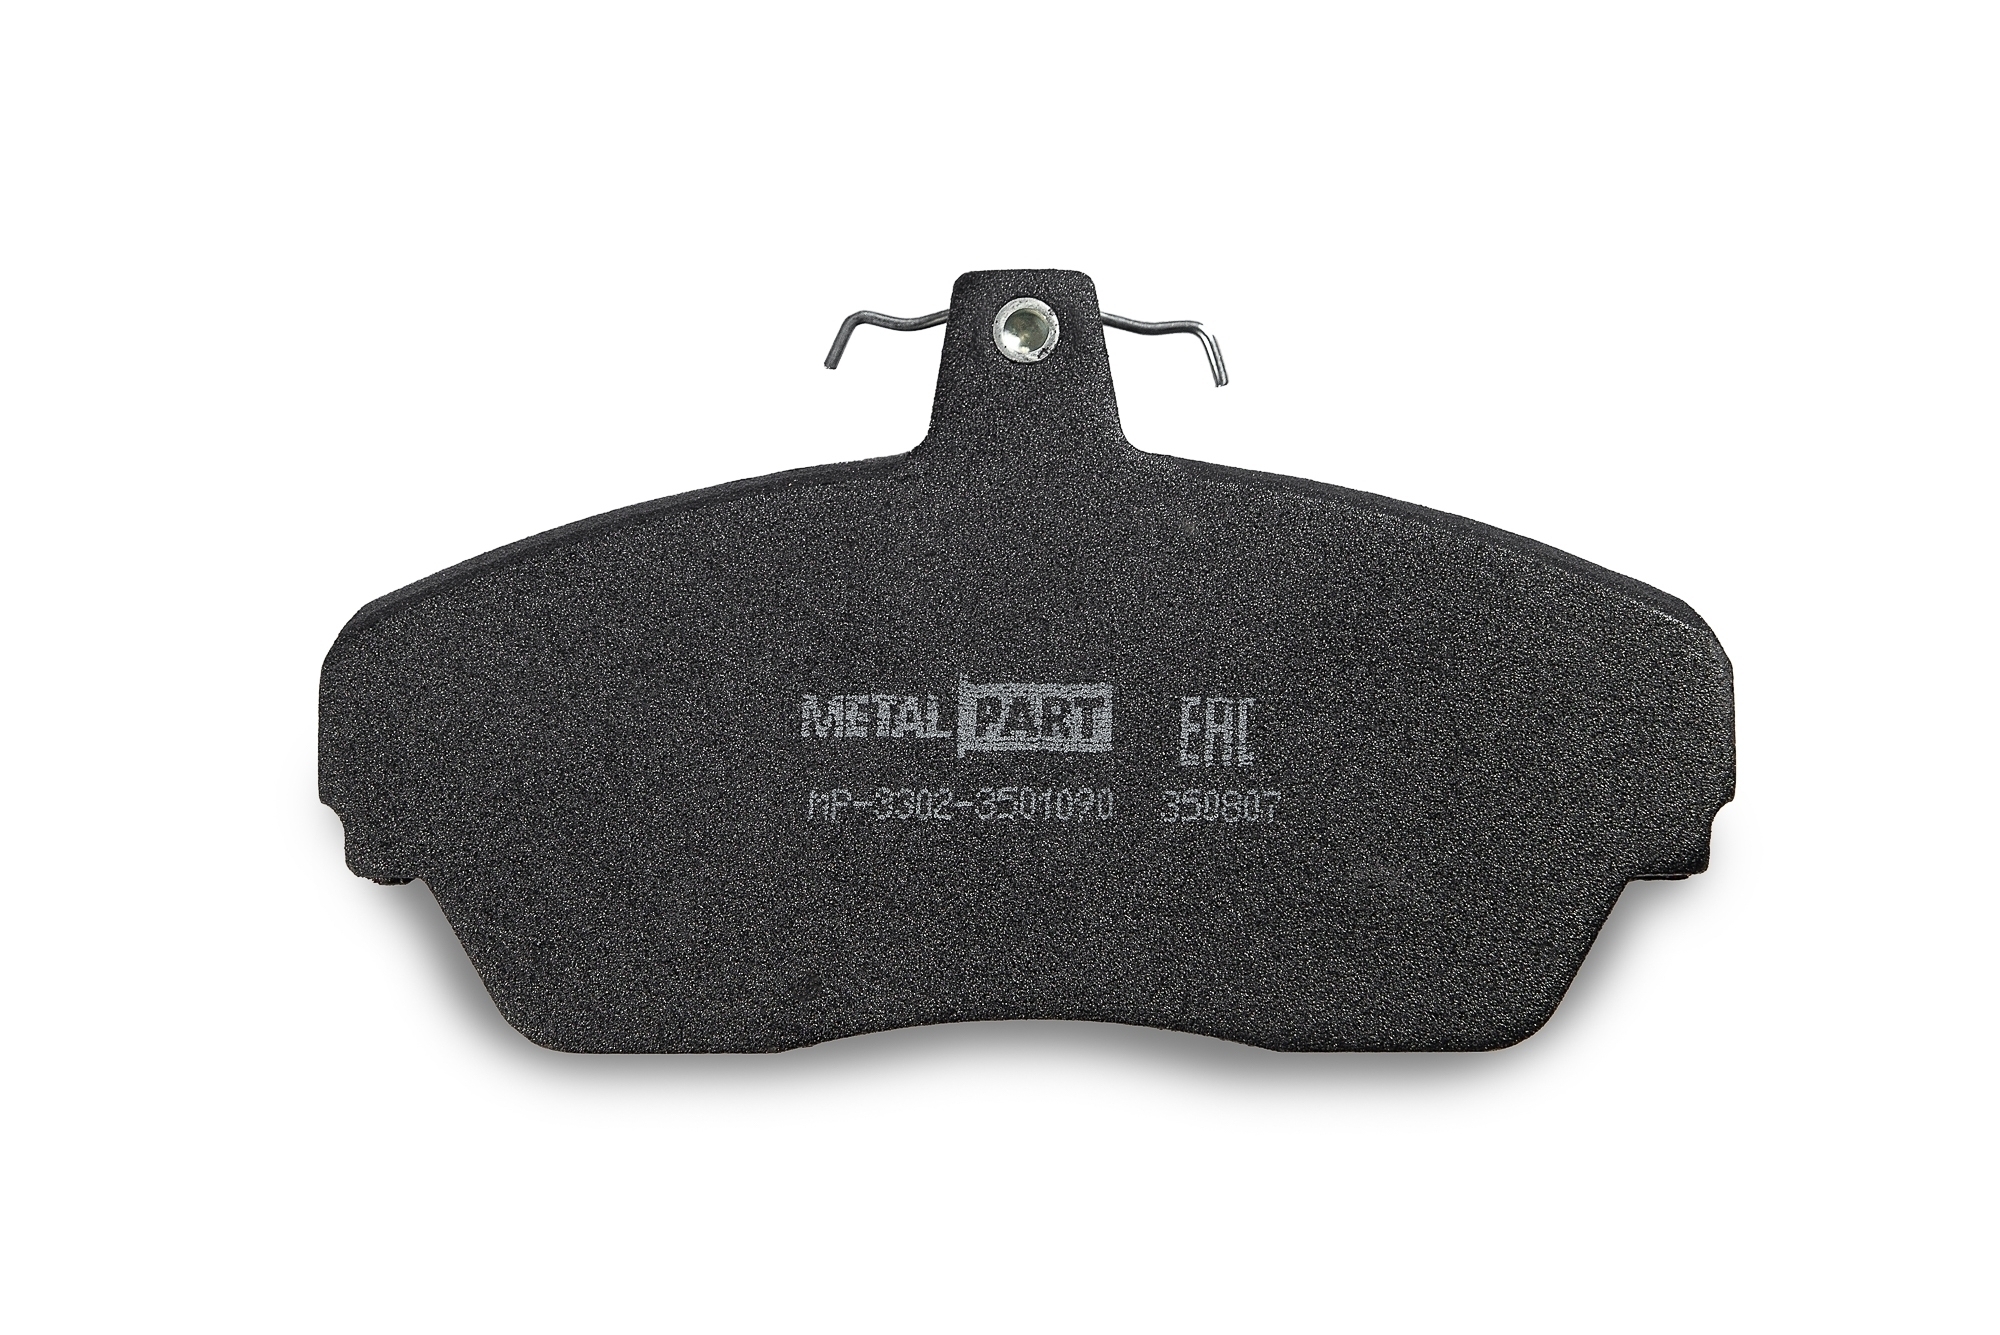 Колодка переднего дискового тормоза "MetalPart" для автомобилей  ГАЗель,ГАЗ 3110 (к-т 4 шт.) 